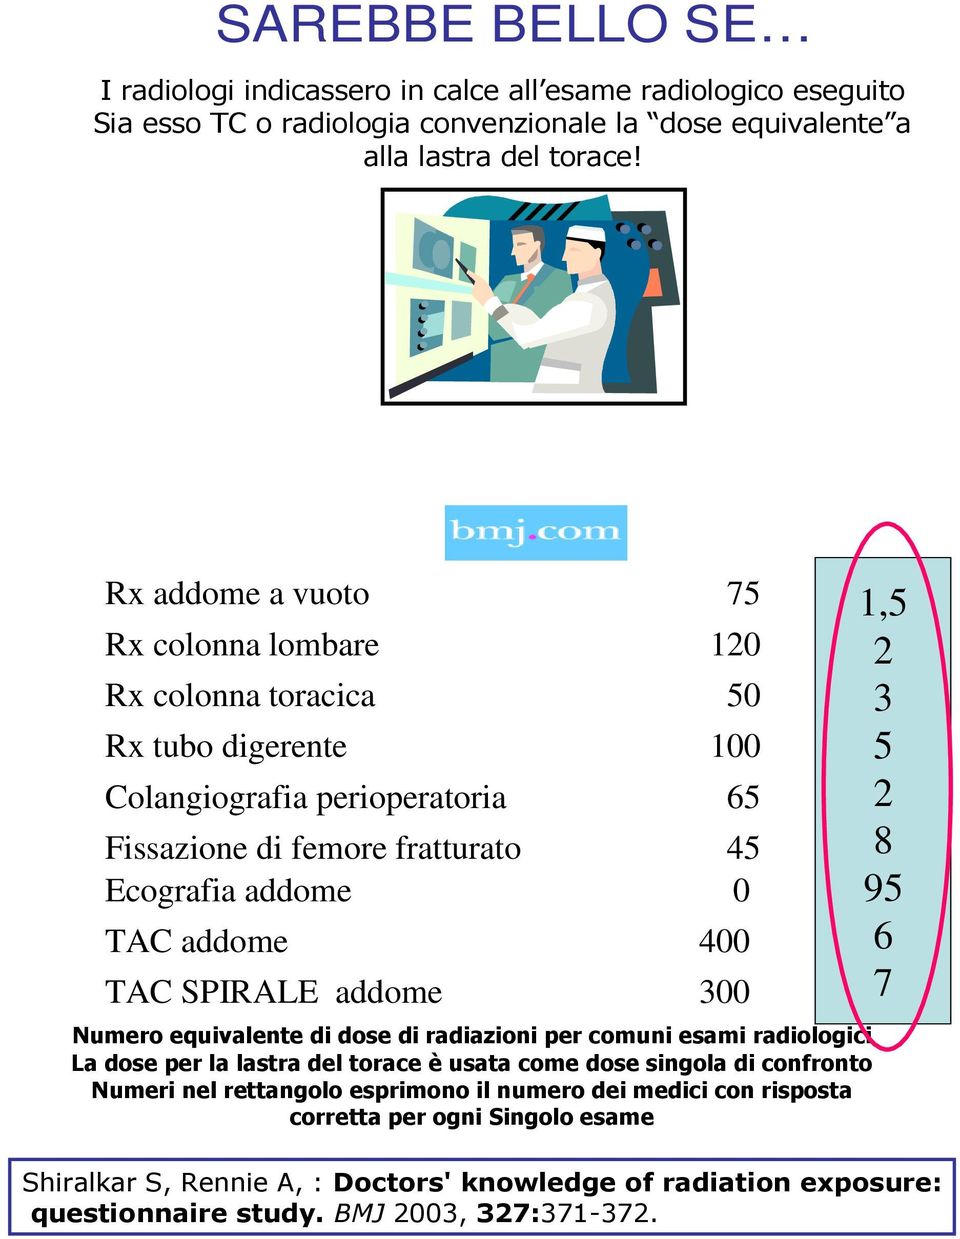 400 TAC SPIRALE addome 300 Numero equivalente di dose di radiazioni per comuni esami radiologici La dose per la lastra del torace è usata come dose singola di confronto Numeri nel